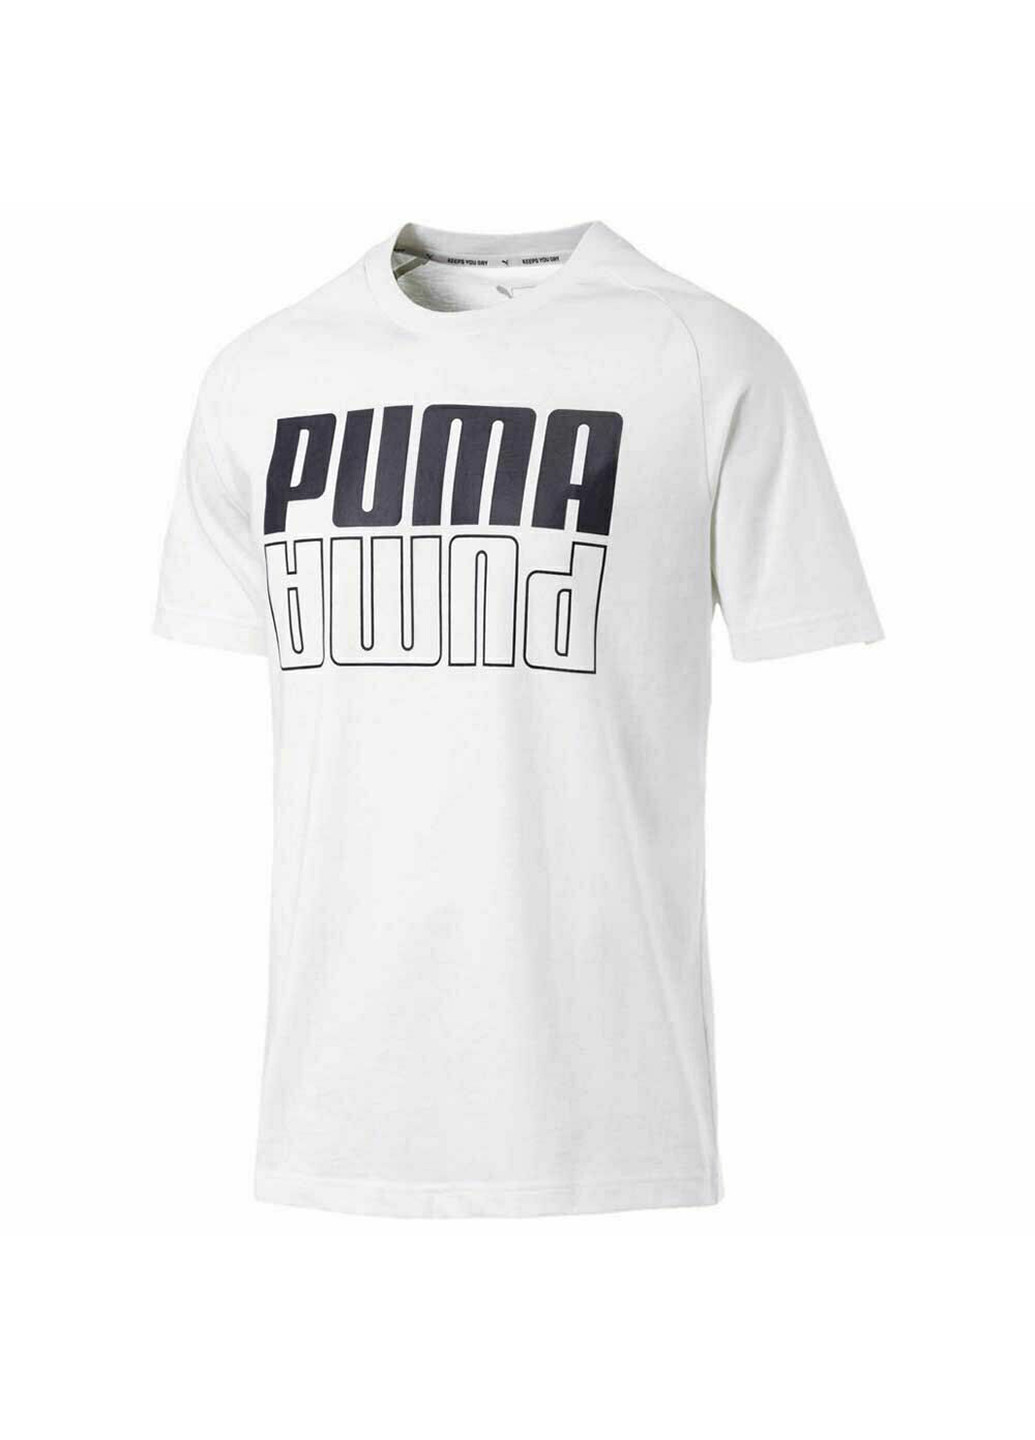 Белая мужская футболка essentials logo men's tee Puma